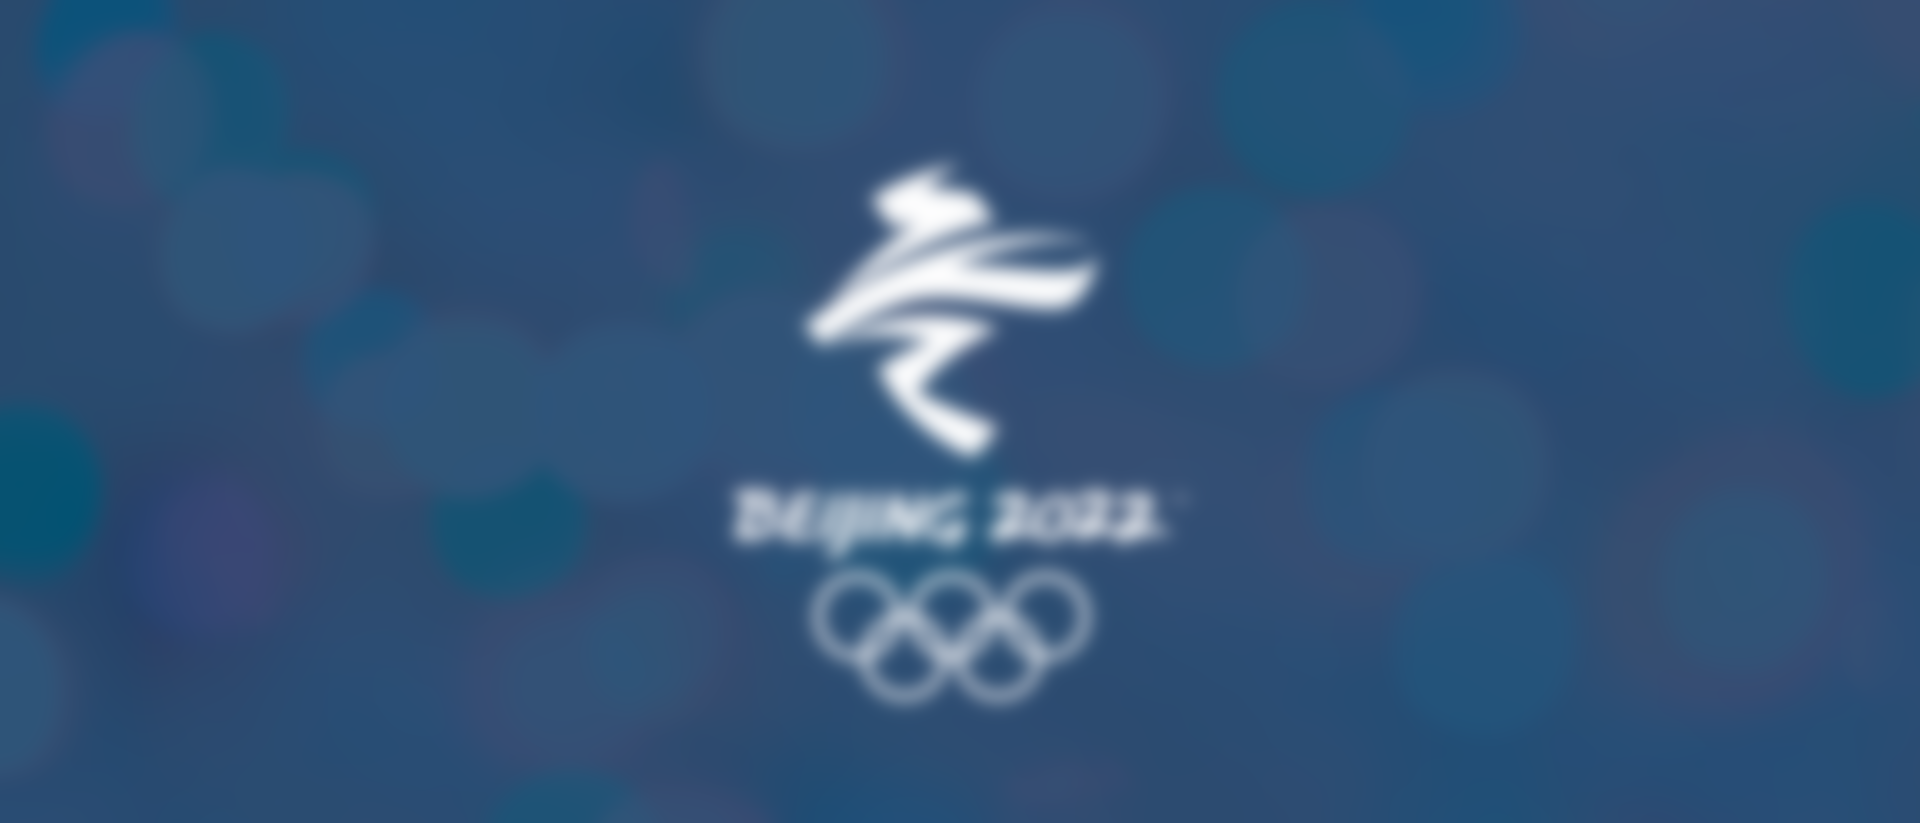 Beijing 2022 | Olympic Winter Games